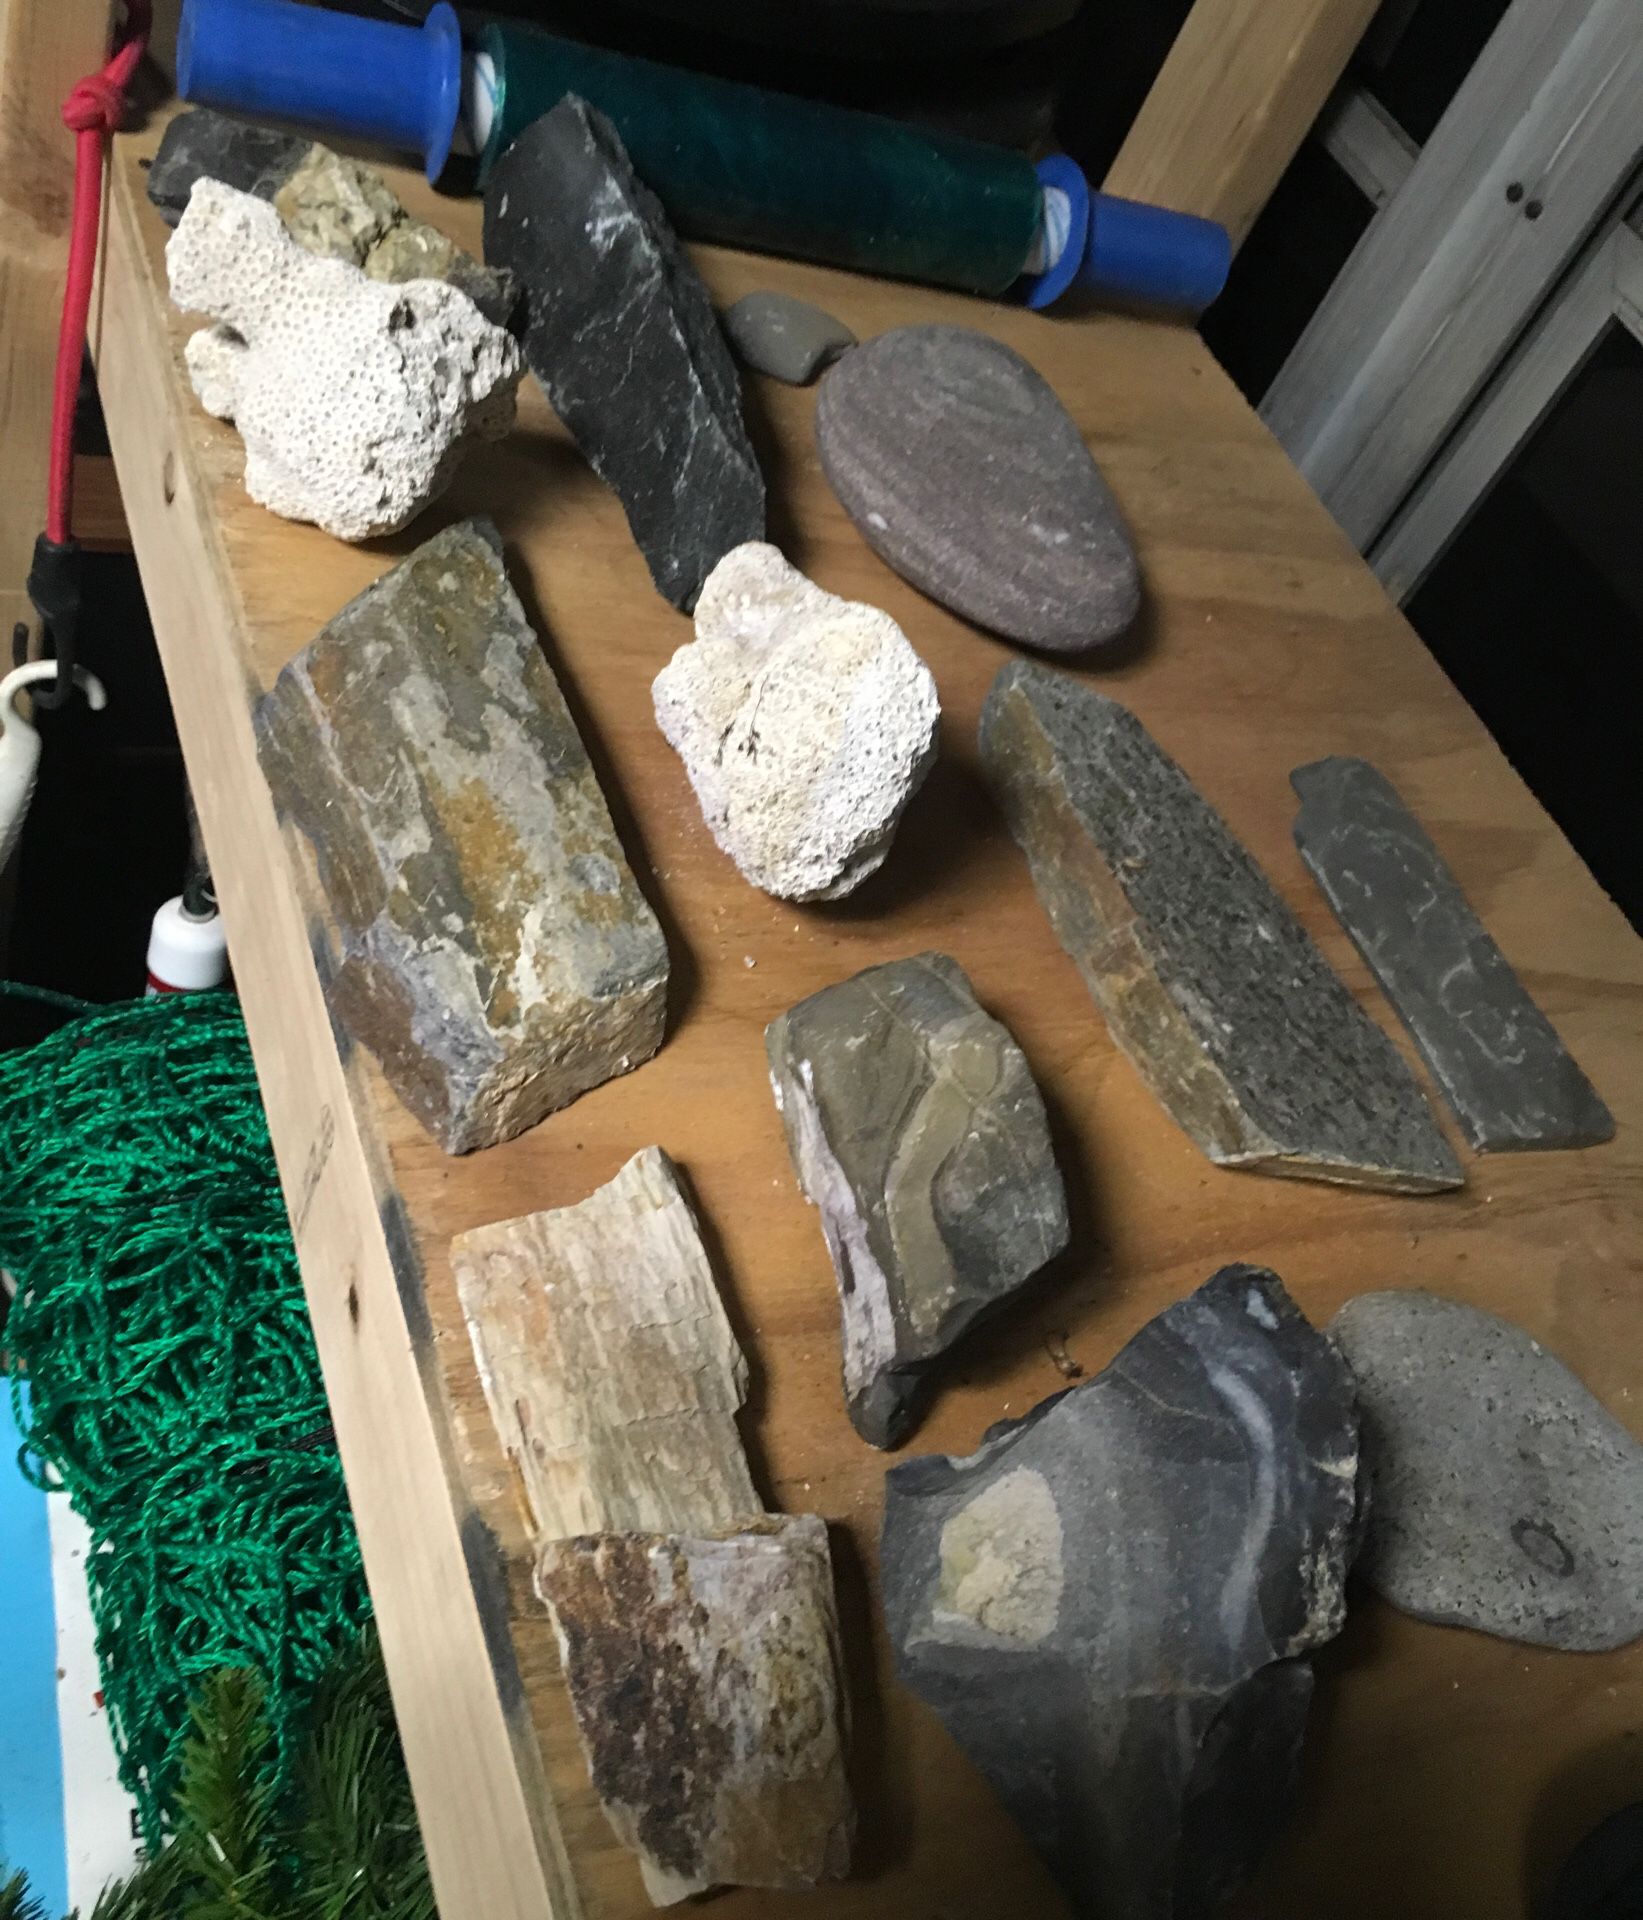 Rocks for aquarium or reptiles